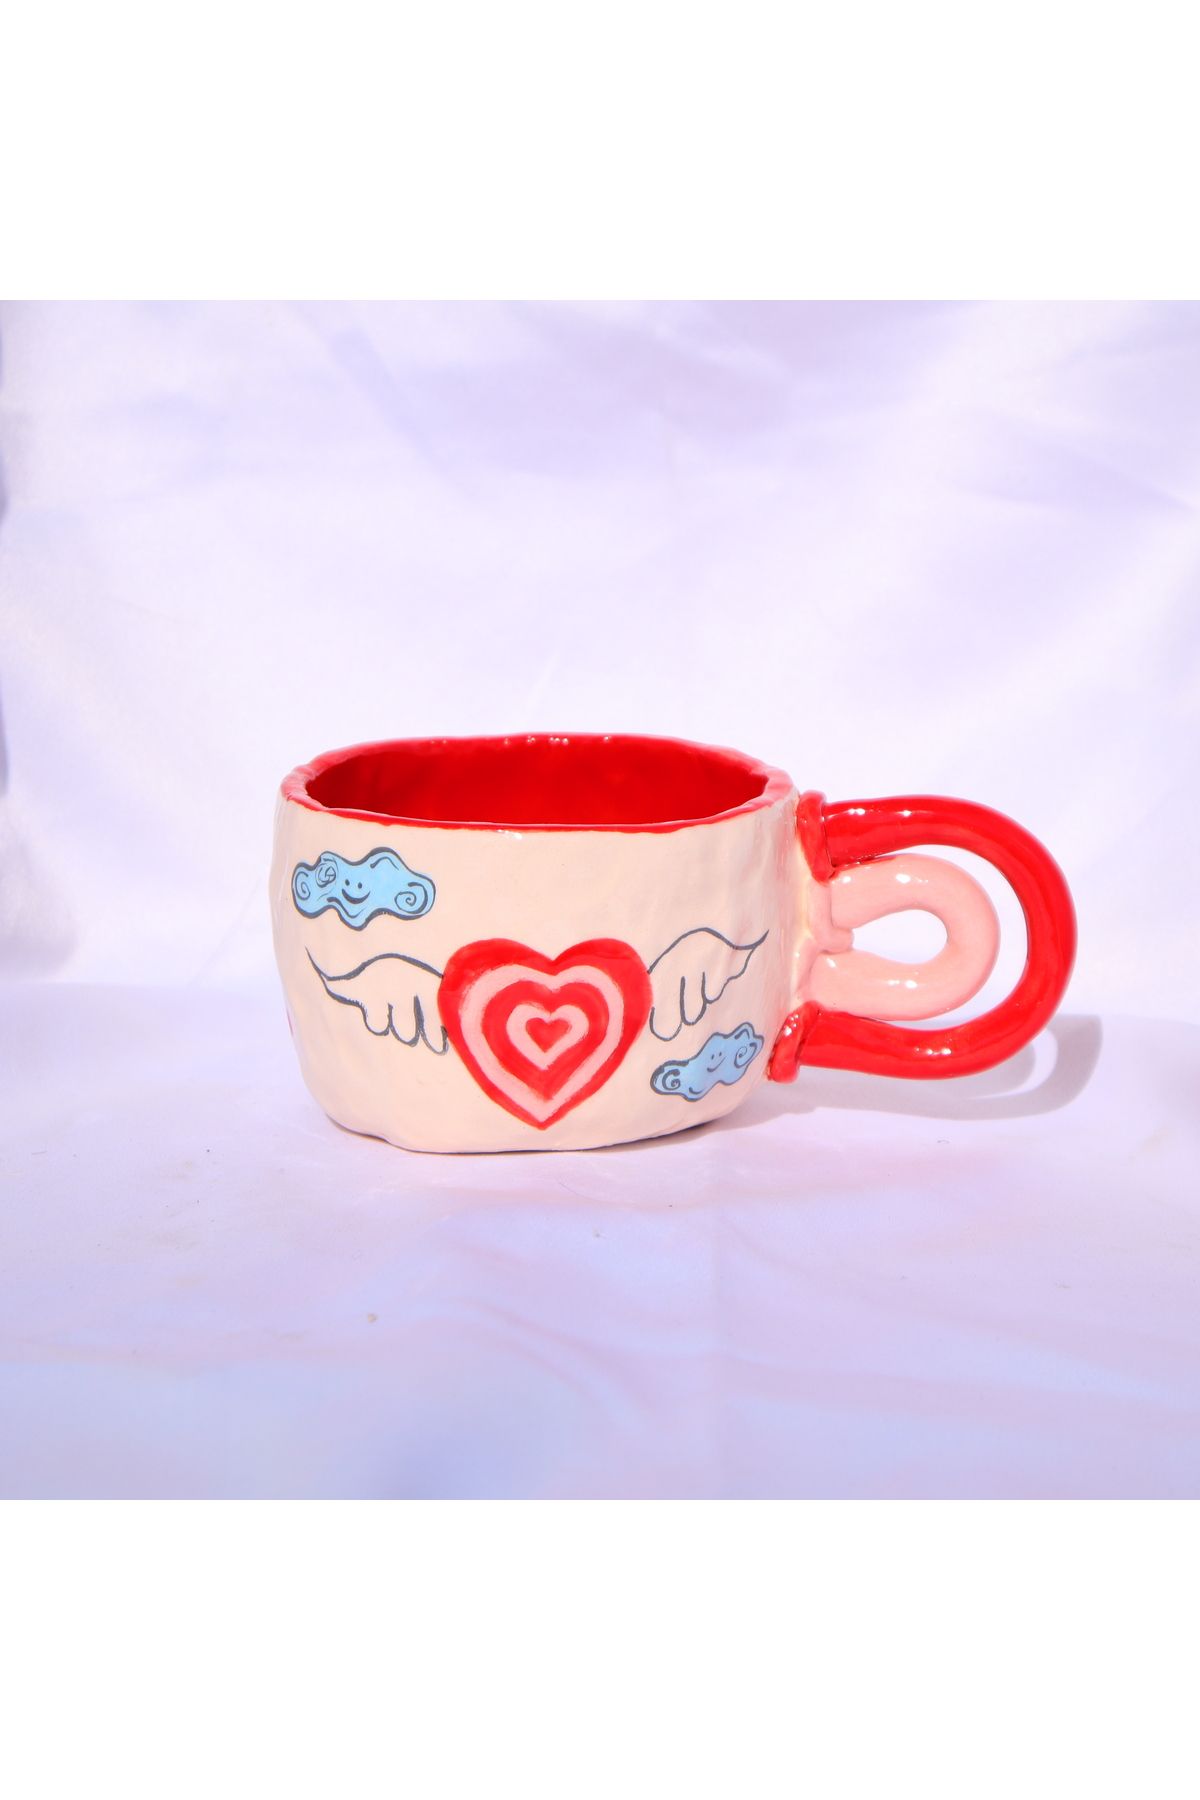 Lily & Loly Ceramics Kanatlı Kalp Desenli El Yapımı Seramik Kupa - Özel 200 ml Sevgililer Günü Hediyesi